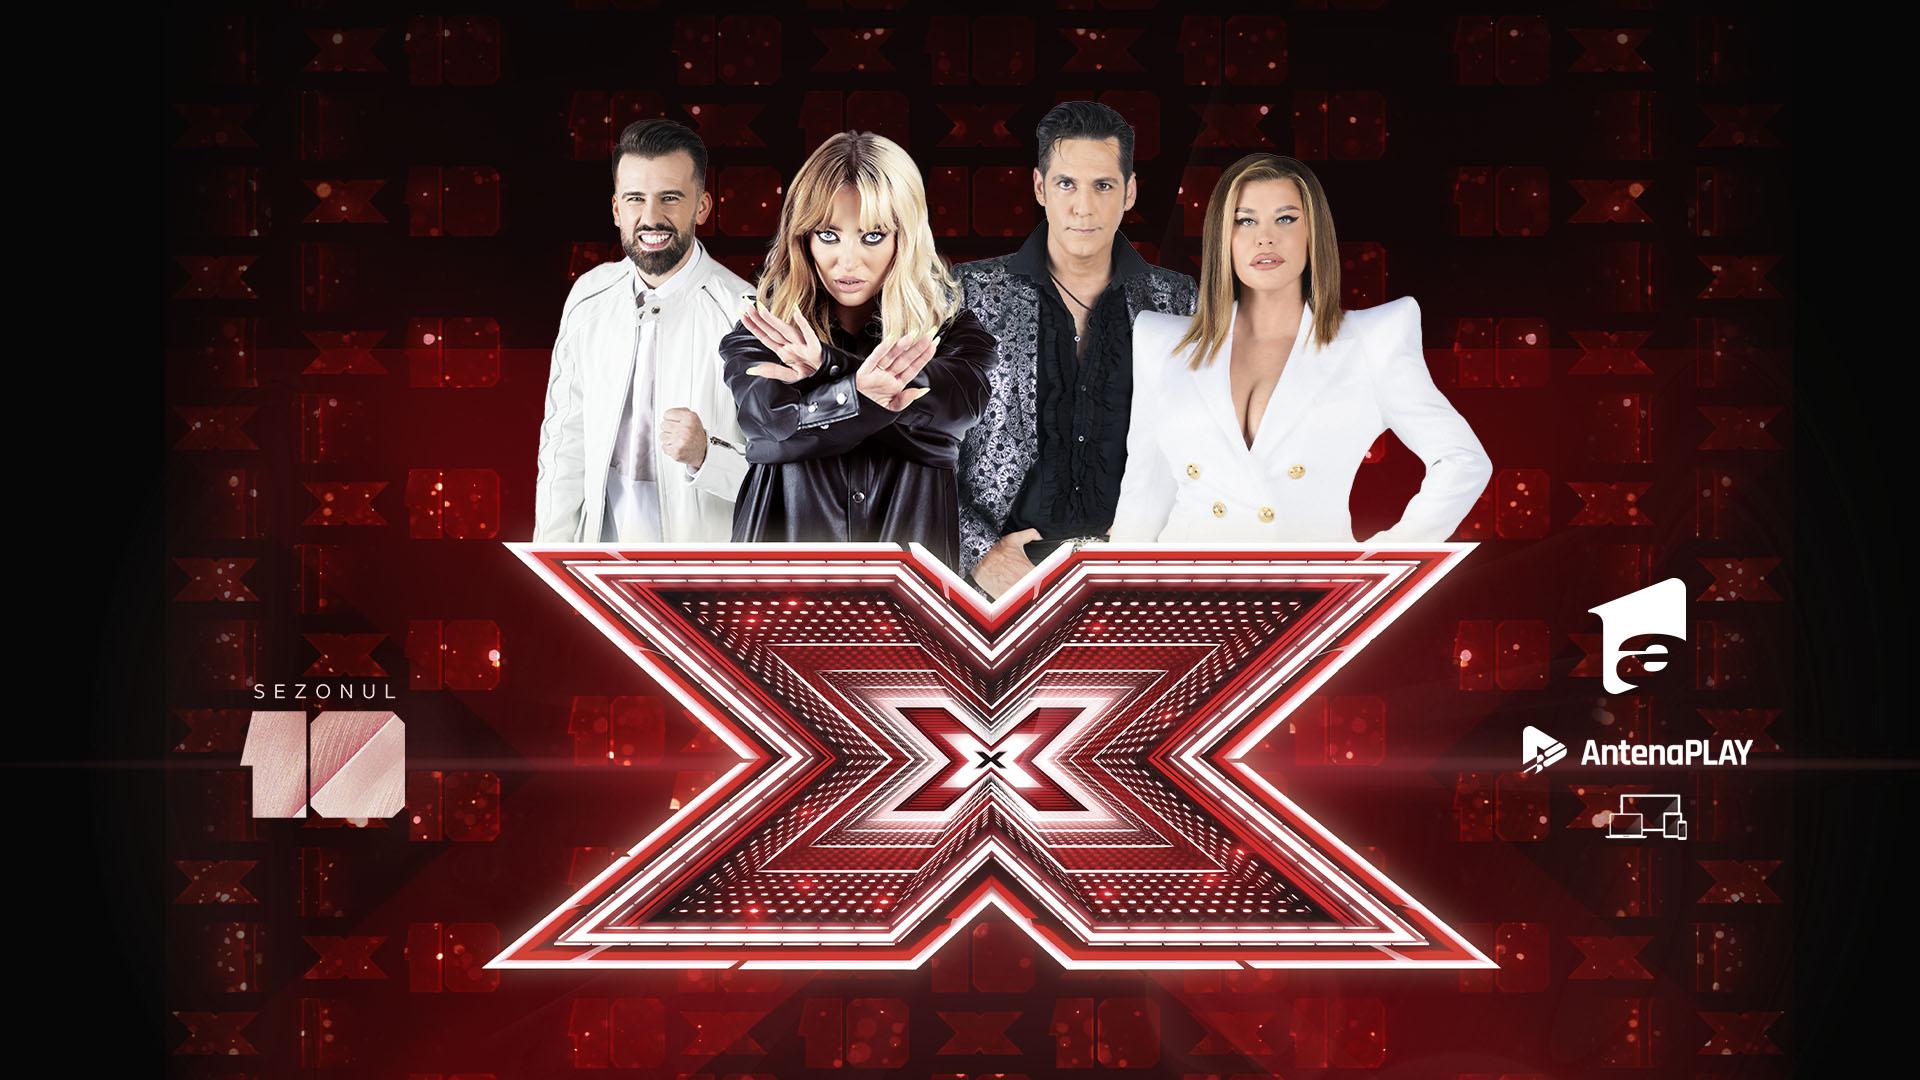 Florin Ristei prevede primele greutăți în grupa sa la X Factor, sezonul 10: ”Sper să nu fie greu de lucrat cu ea”